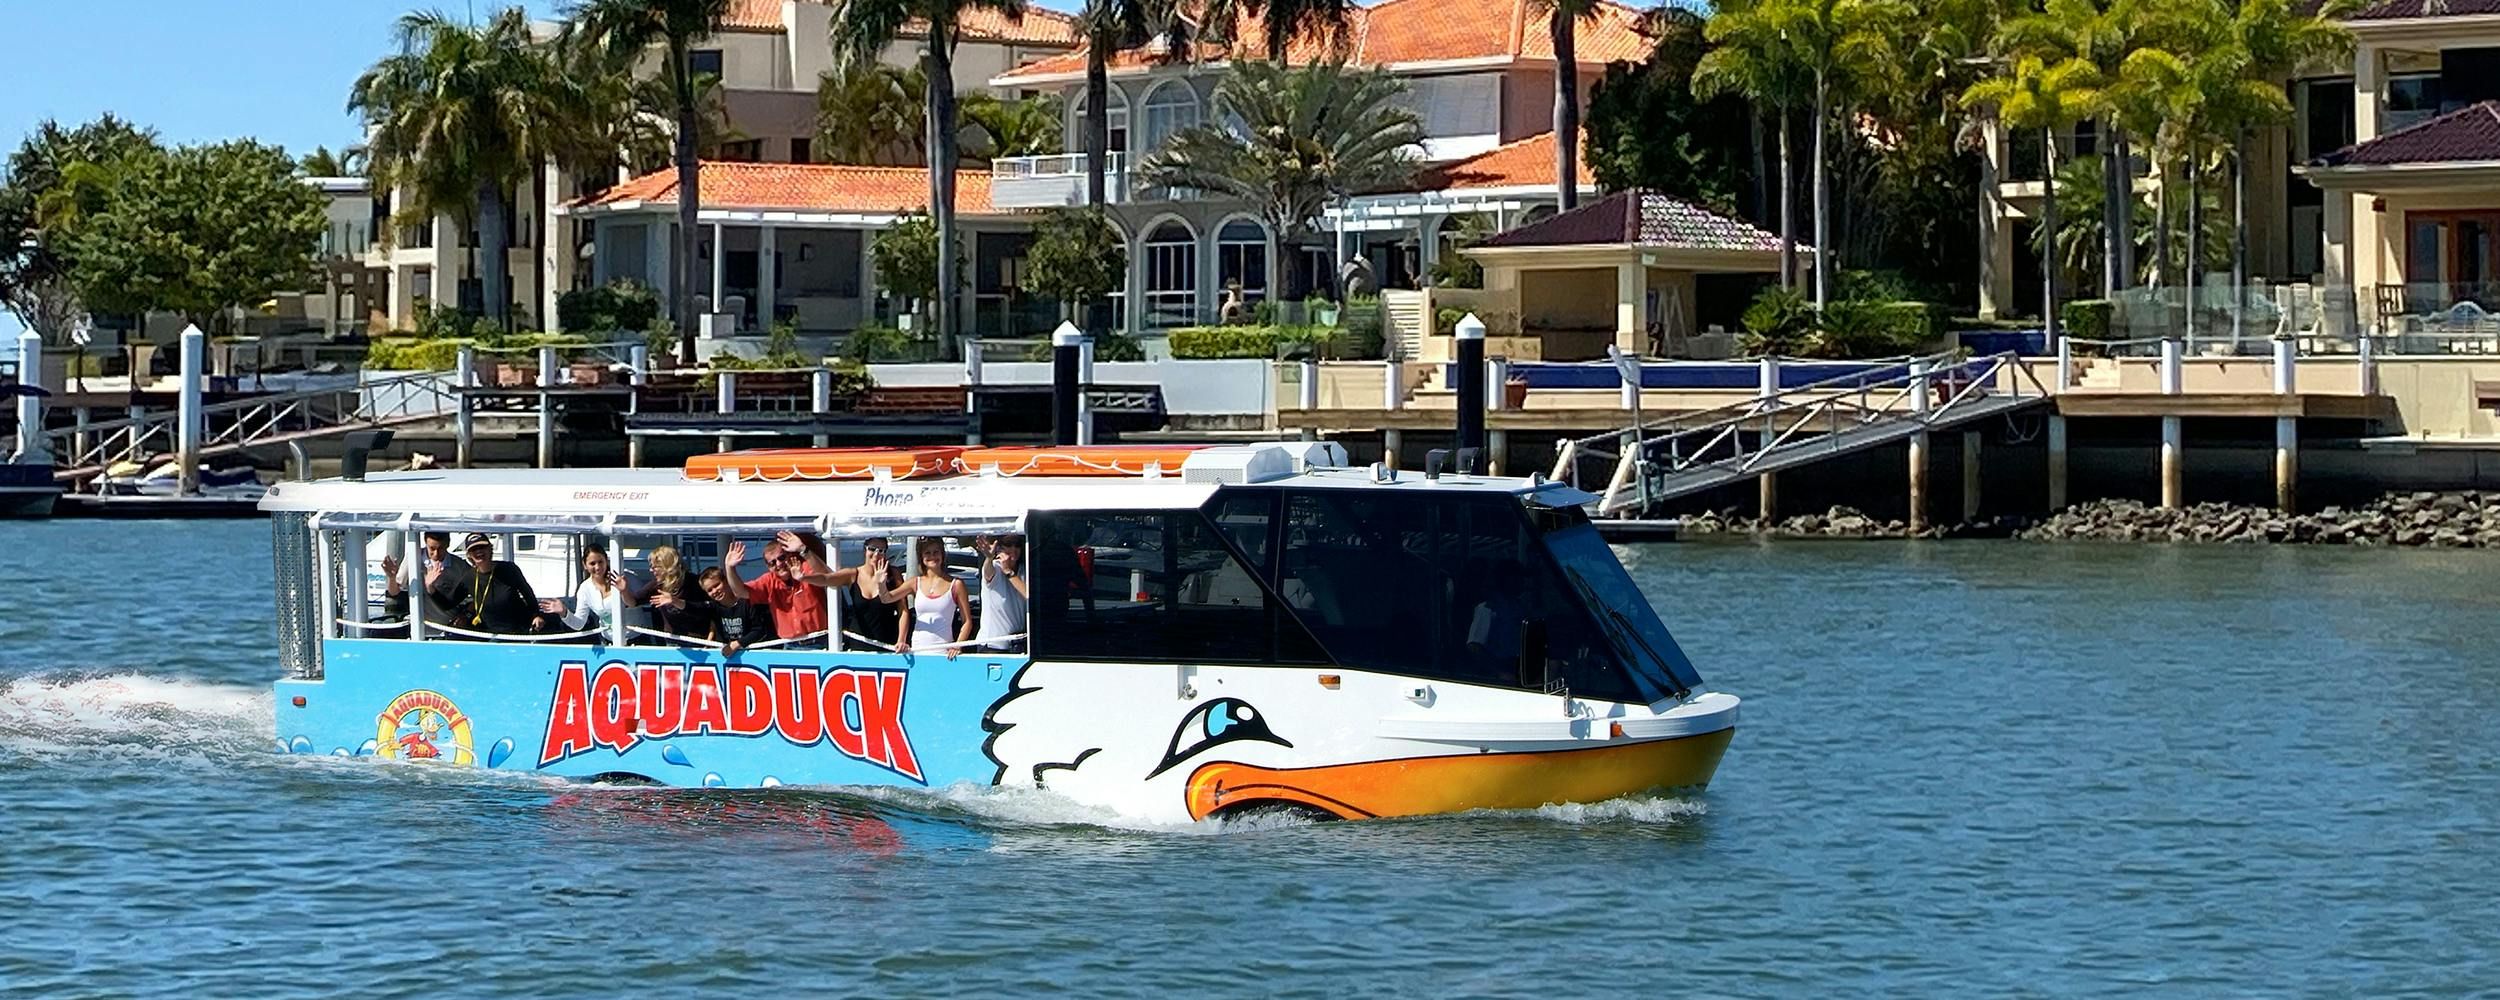 Imagen del tour: Aquaduck Sunshine Coast Tour de 1 hora por la ciudad y crucero por el río